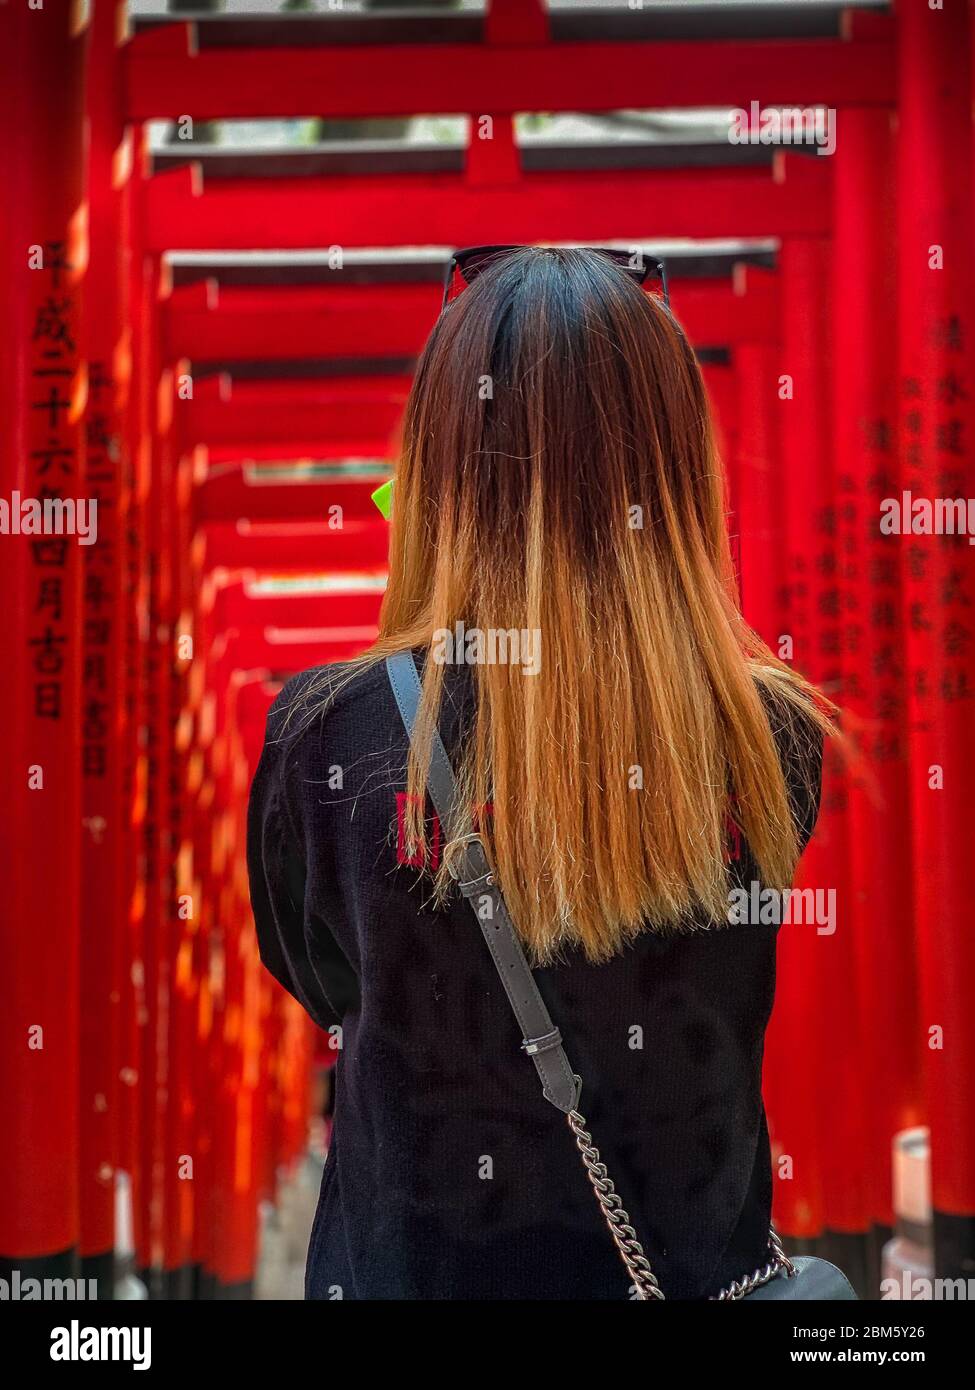 Weibchen mit langen braunen Haaren (zurück zur Kamera), steht am Eingang zu einem Tortunnel am Hie Jinja Schrein, Nagatacho, Tokio. Stockfoto